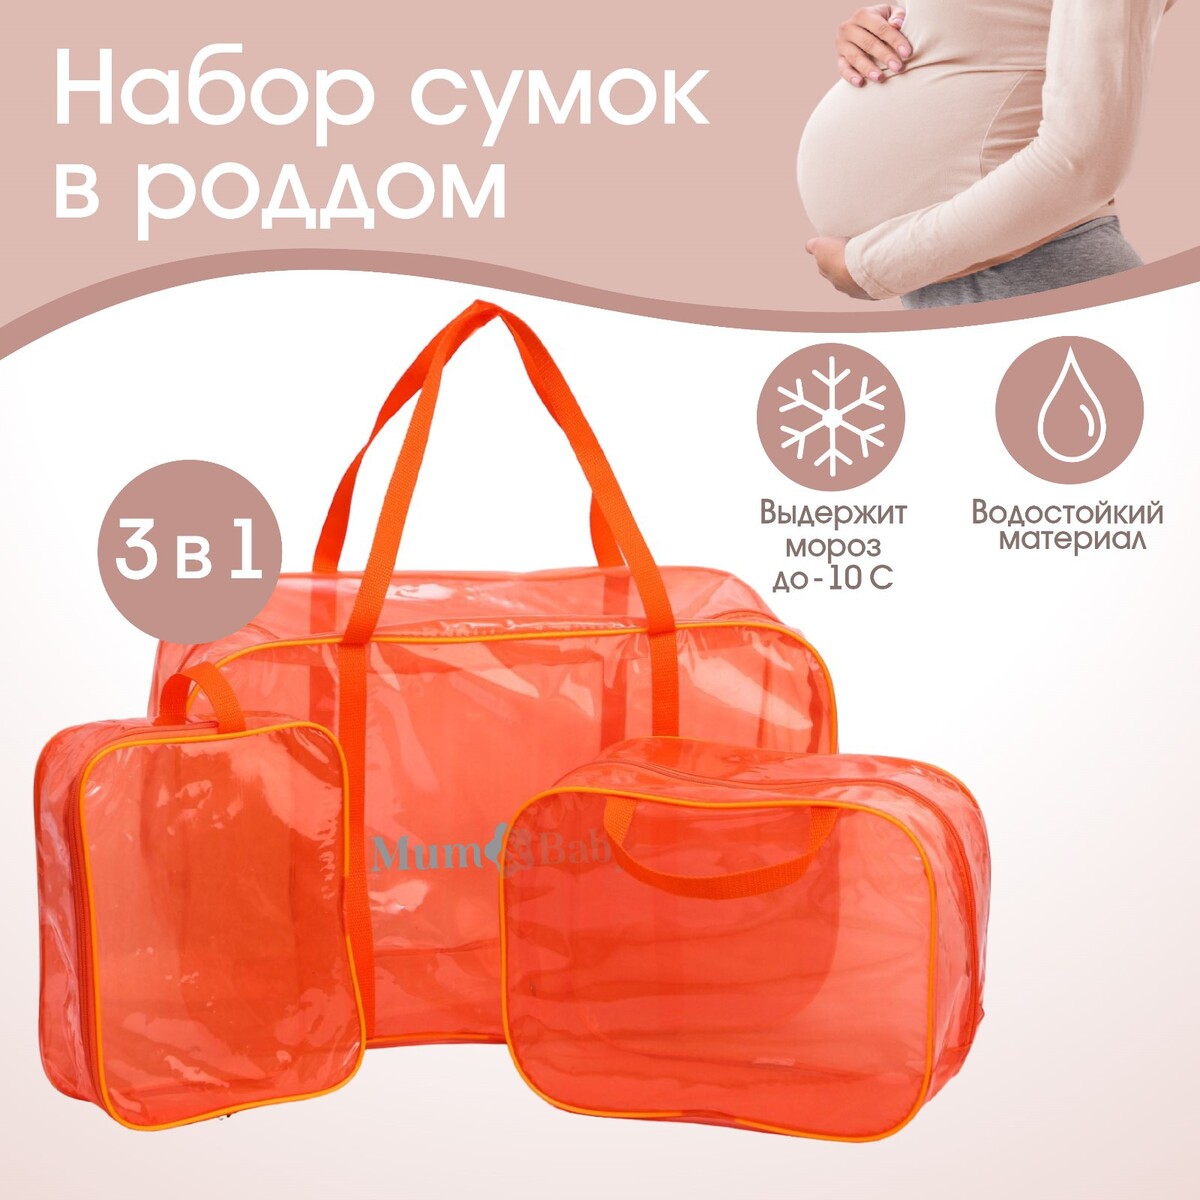 фото Набор сумок в роддом, 3 шт., цветной пвх, цвет оранжевый mum&baby